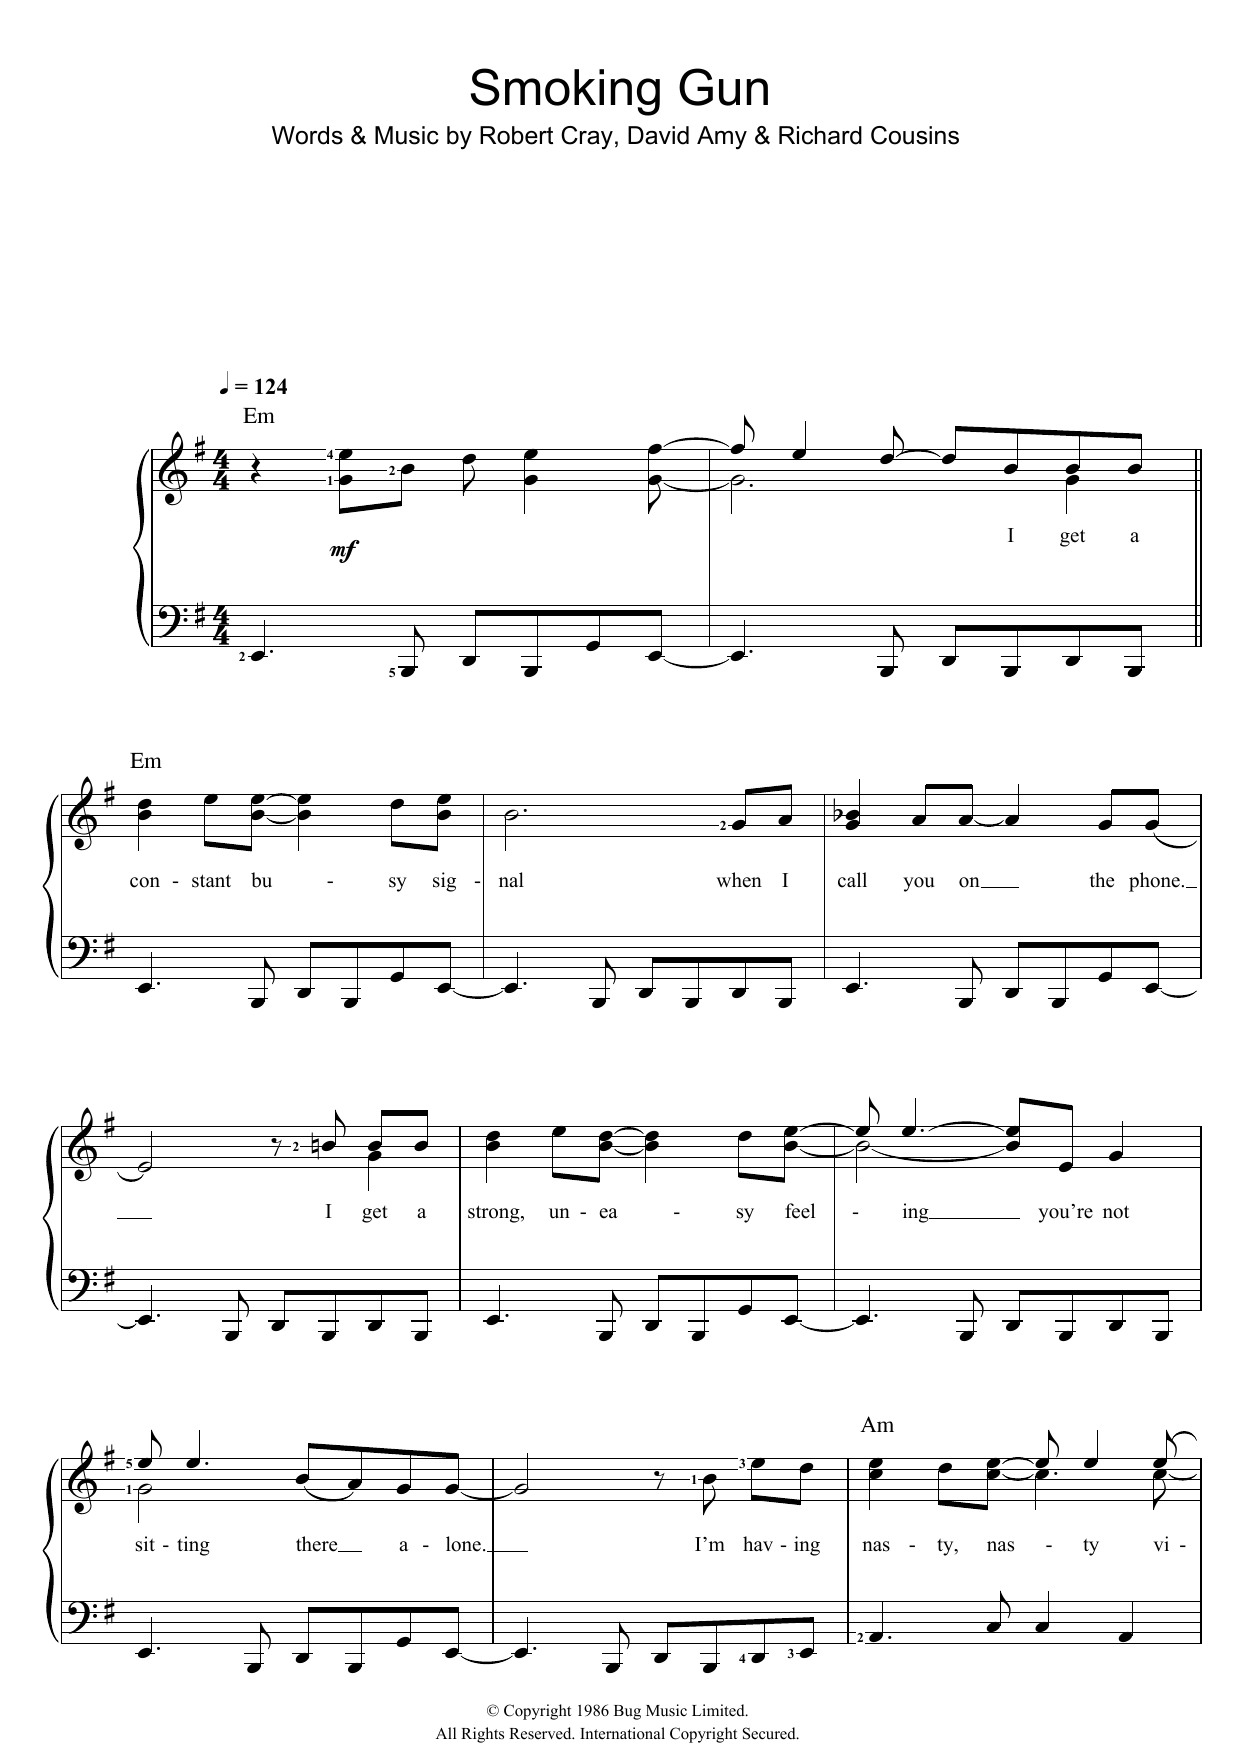 Robert Cray Smoking Gun Sheet Music Notes & Chords for Guitar Lead Sheet - Download or Print PDF